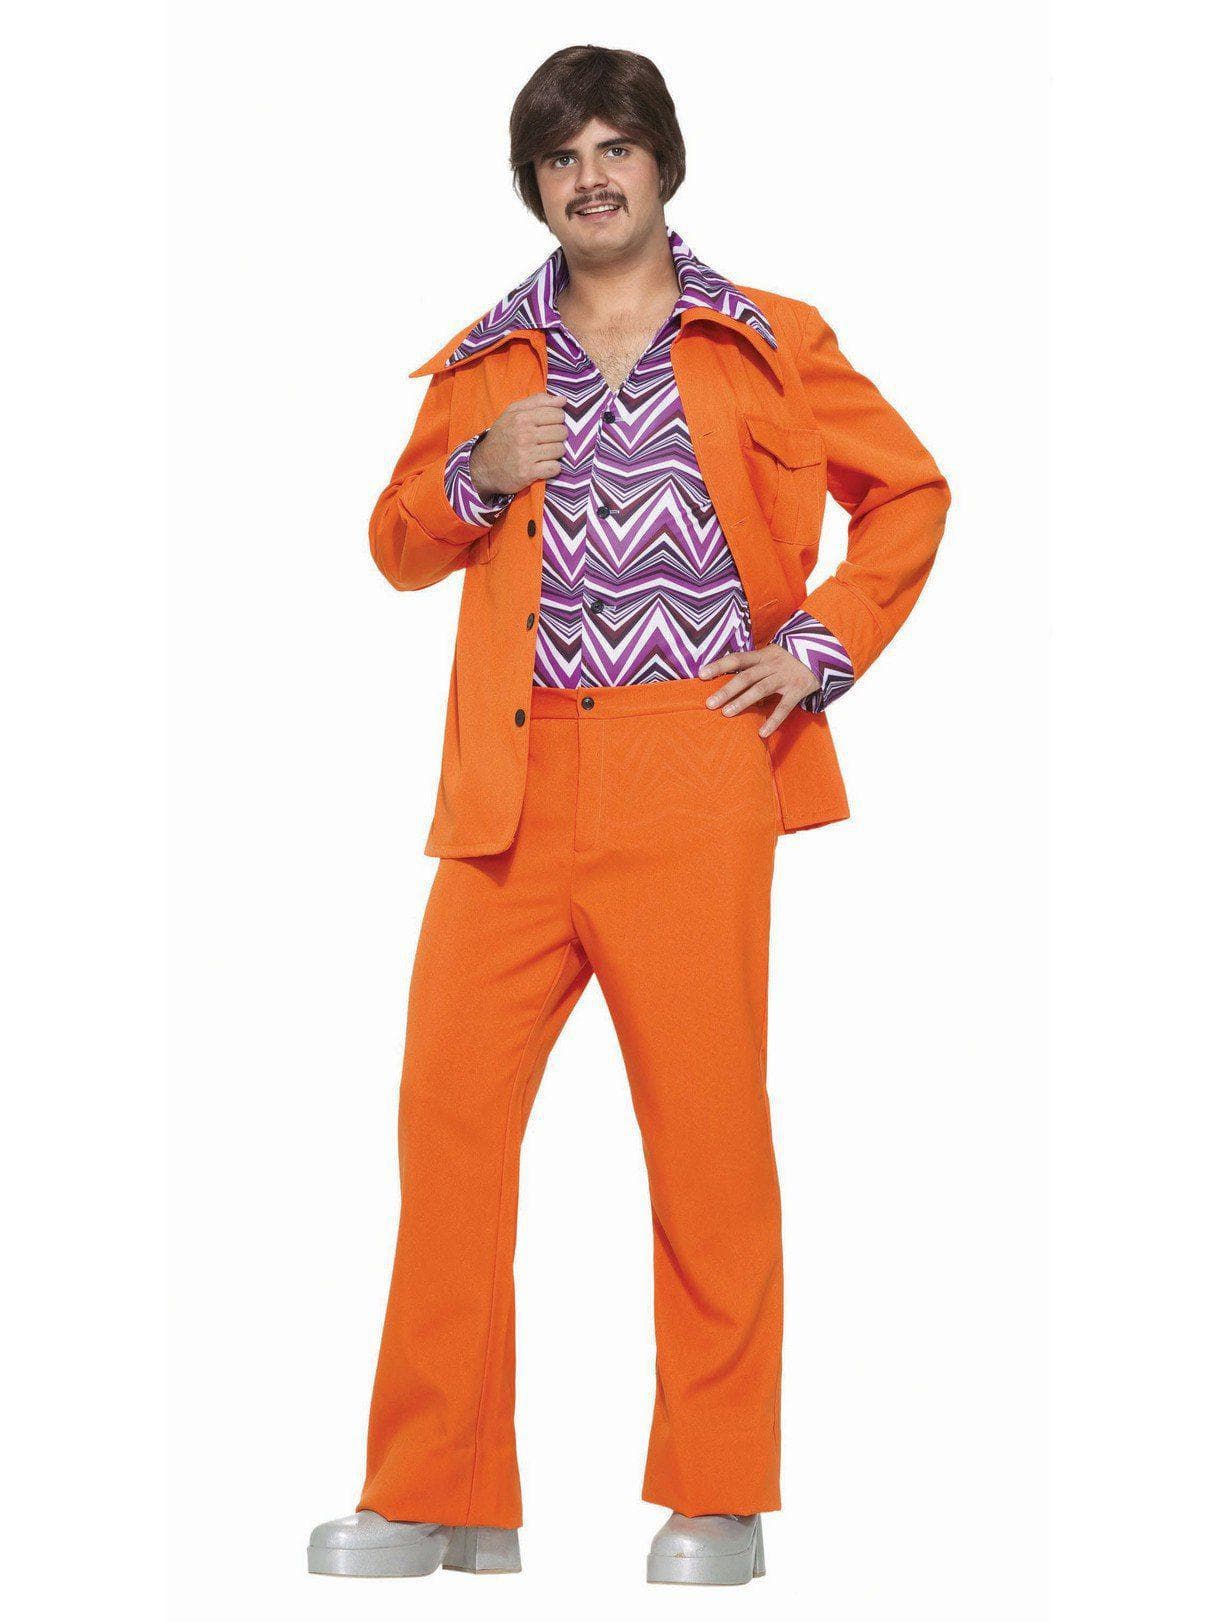 Adult Leisure Suit Orange Costume - costumes.com